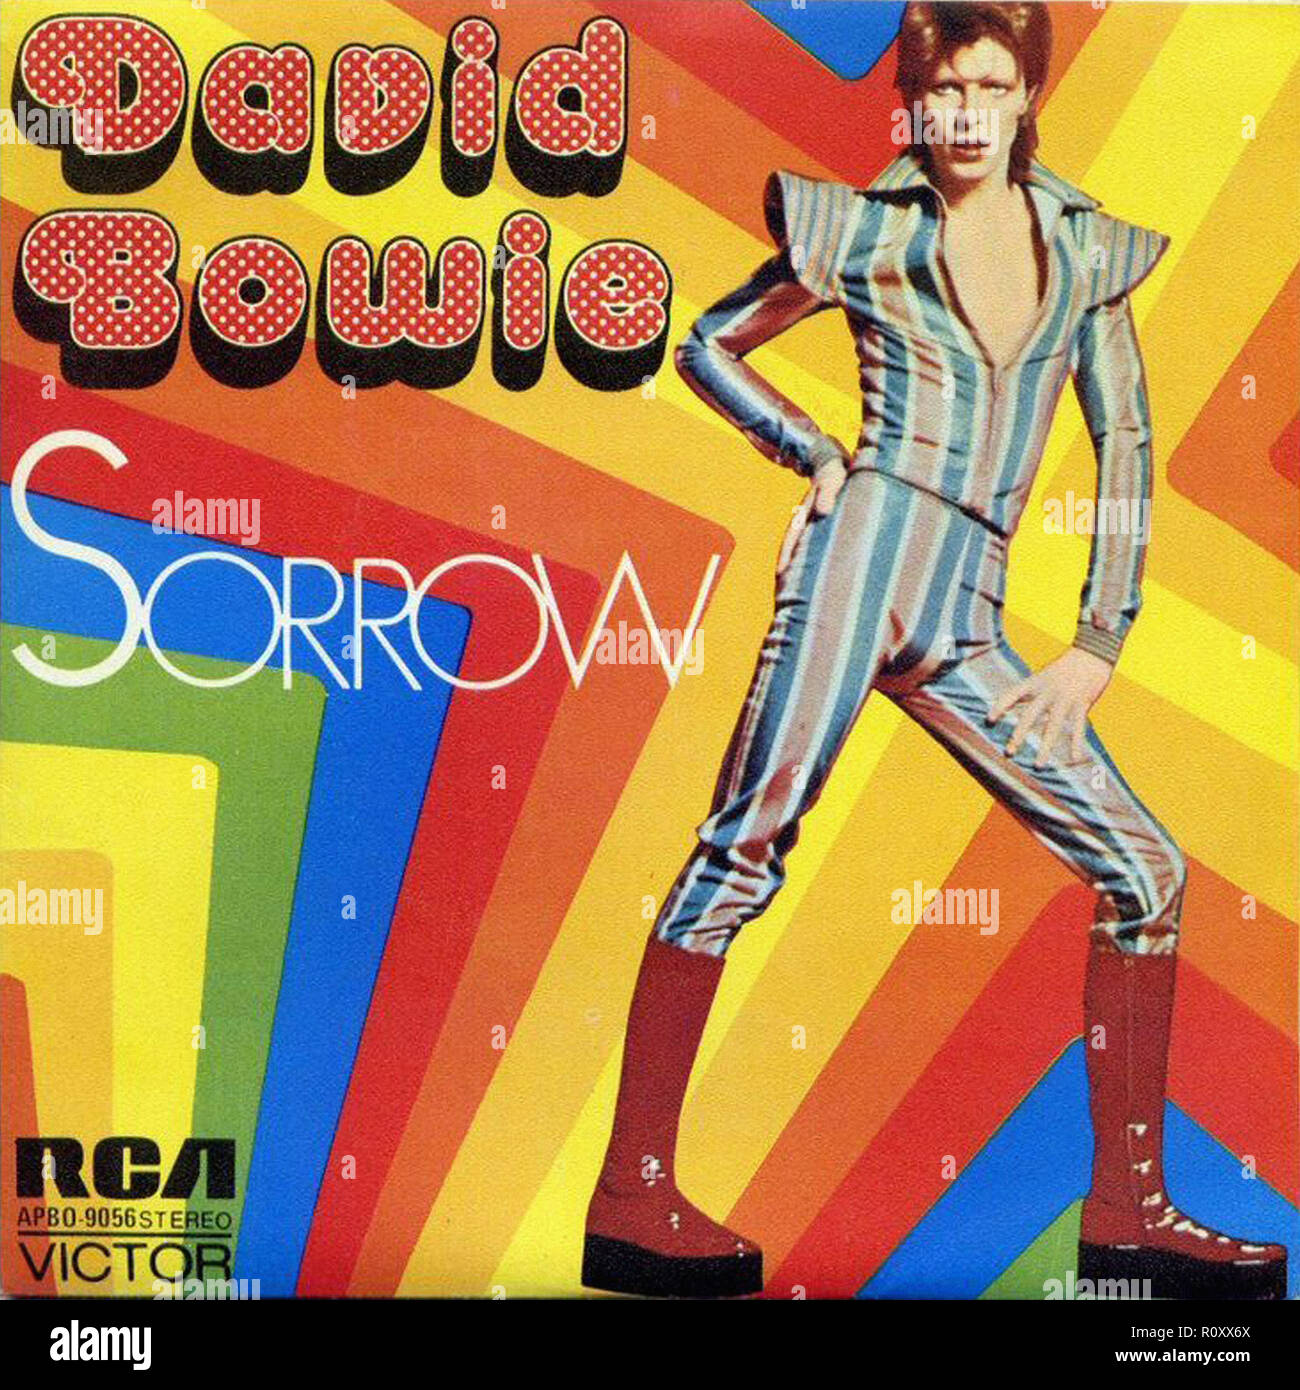 DAVID BOWIE - Dolore - Vintage cover album Foto stock - Alamy